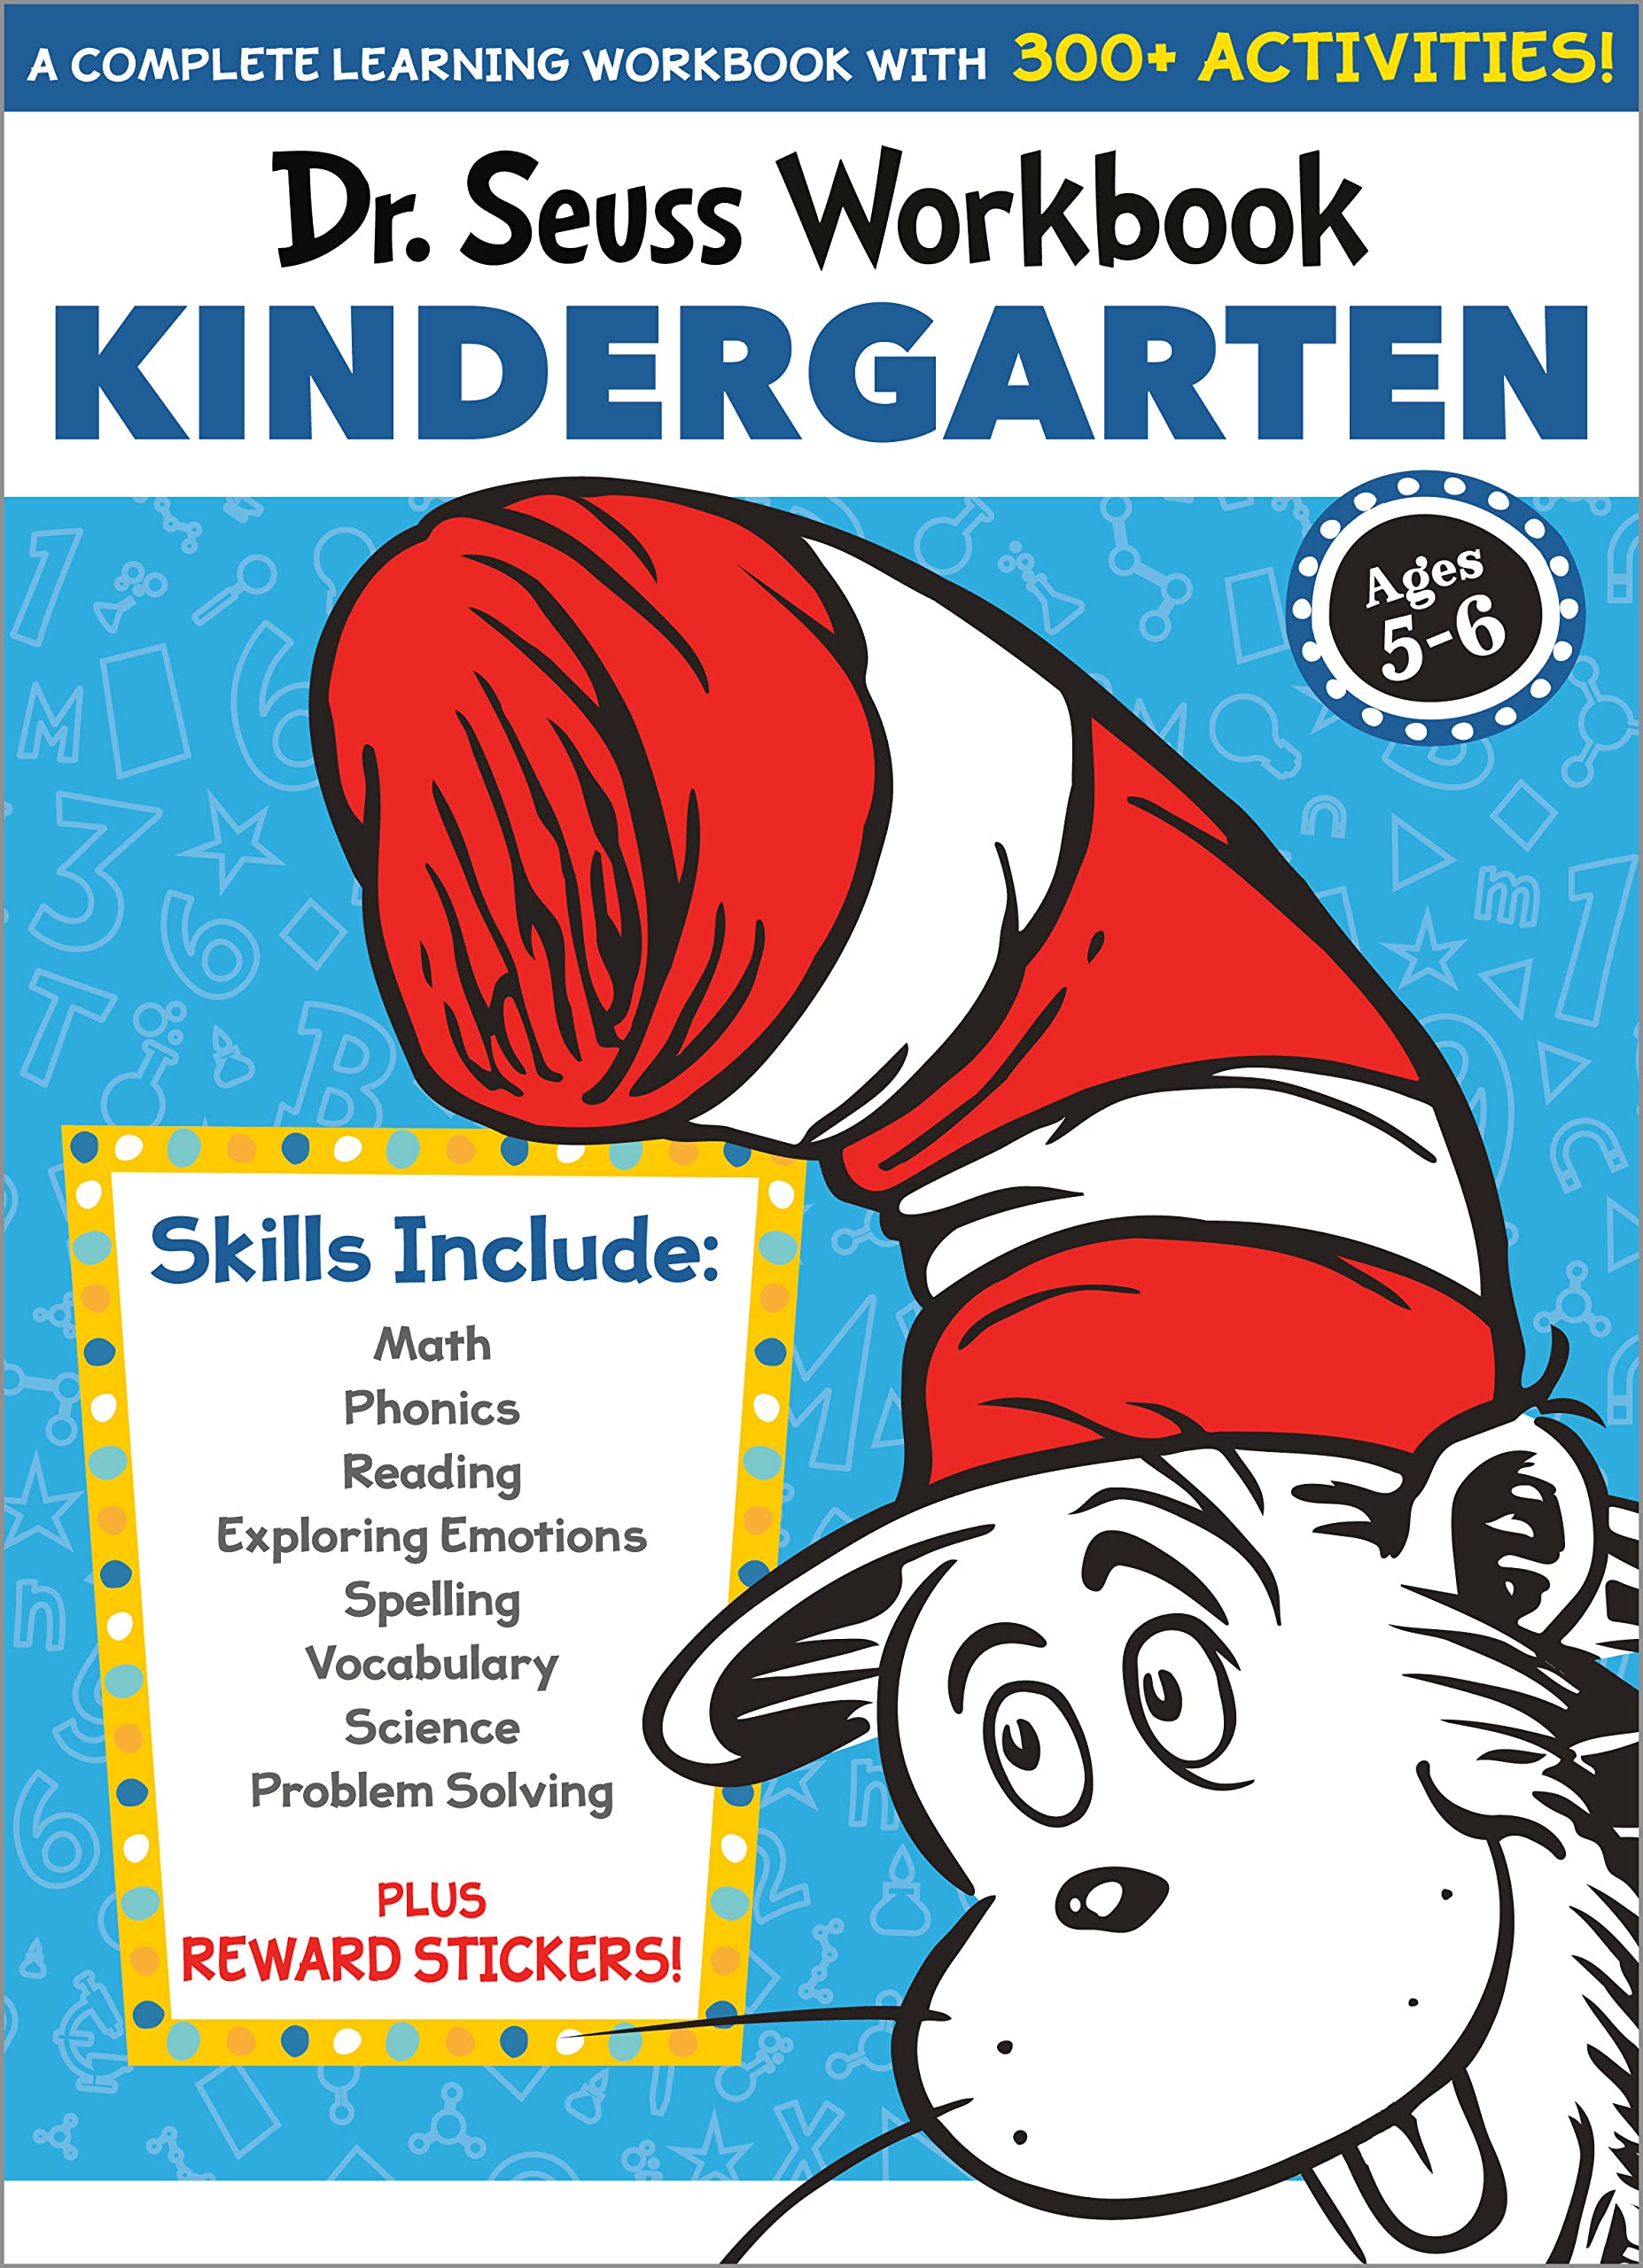 Dr. Seuss Workbook: Kindergarten: 300+ Fun Activities with Stickers